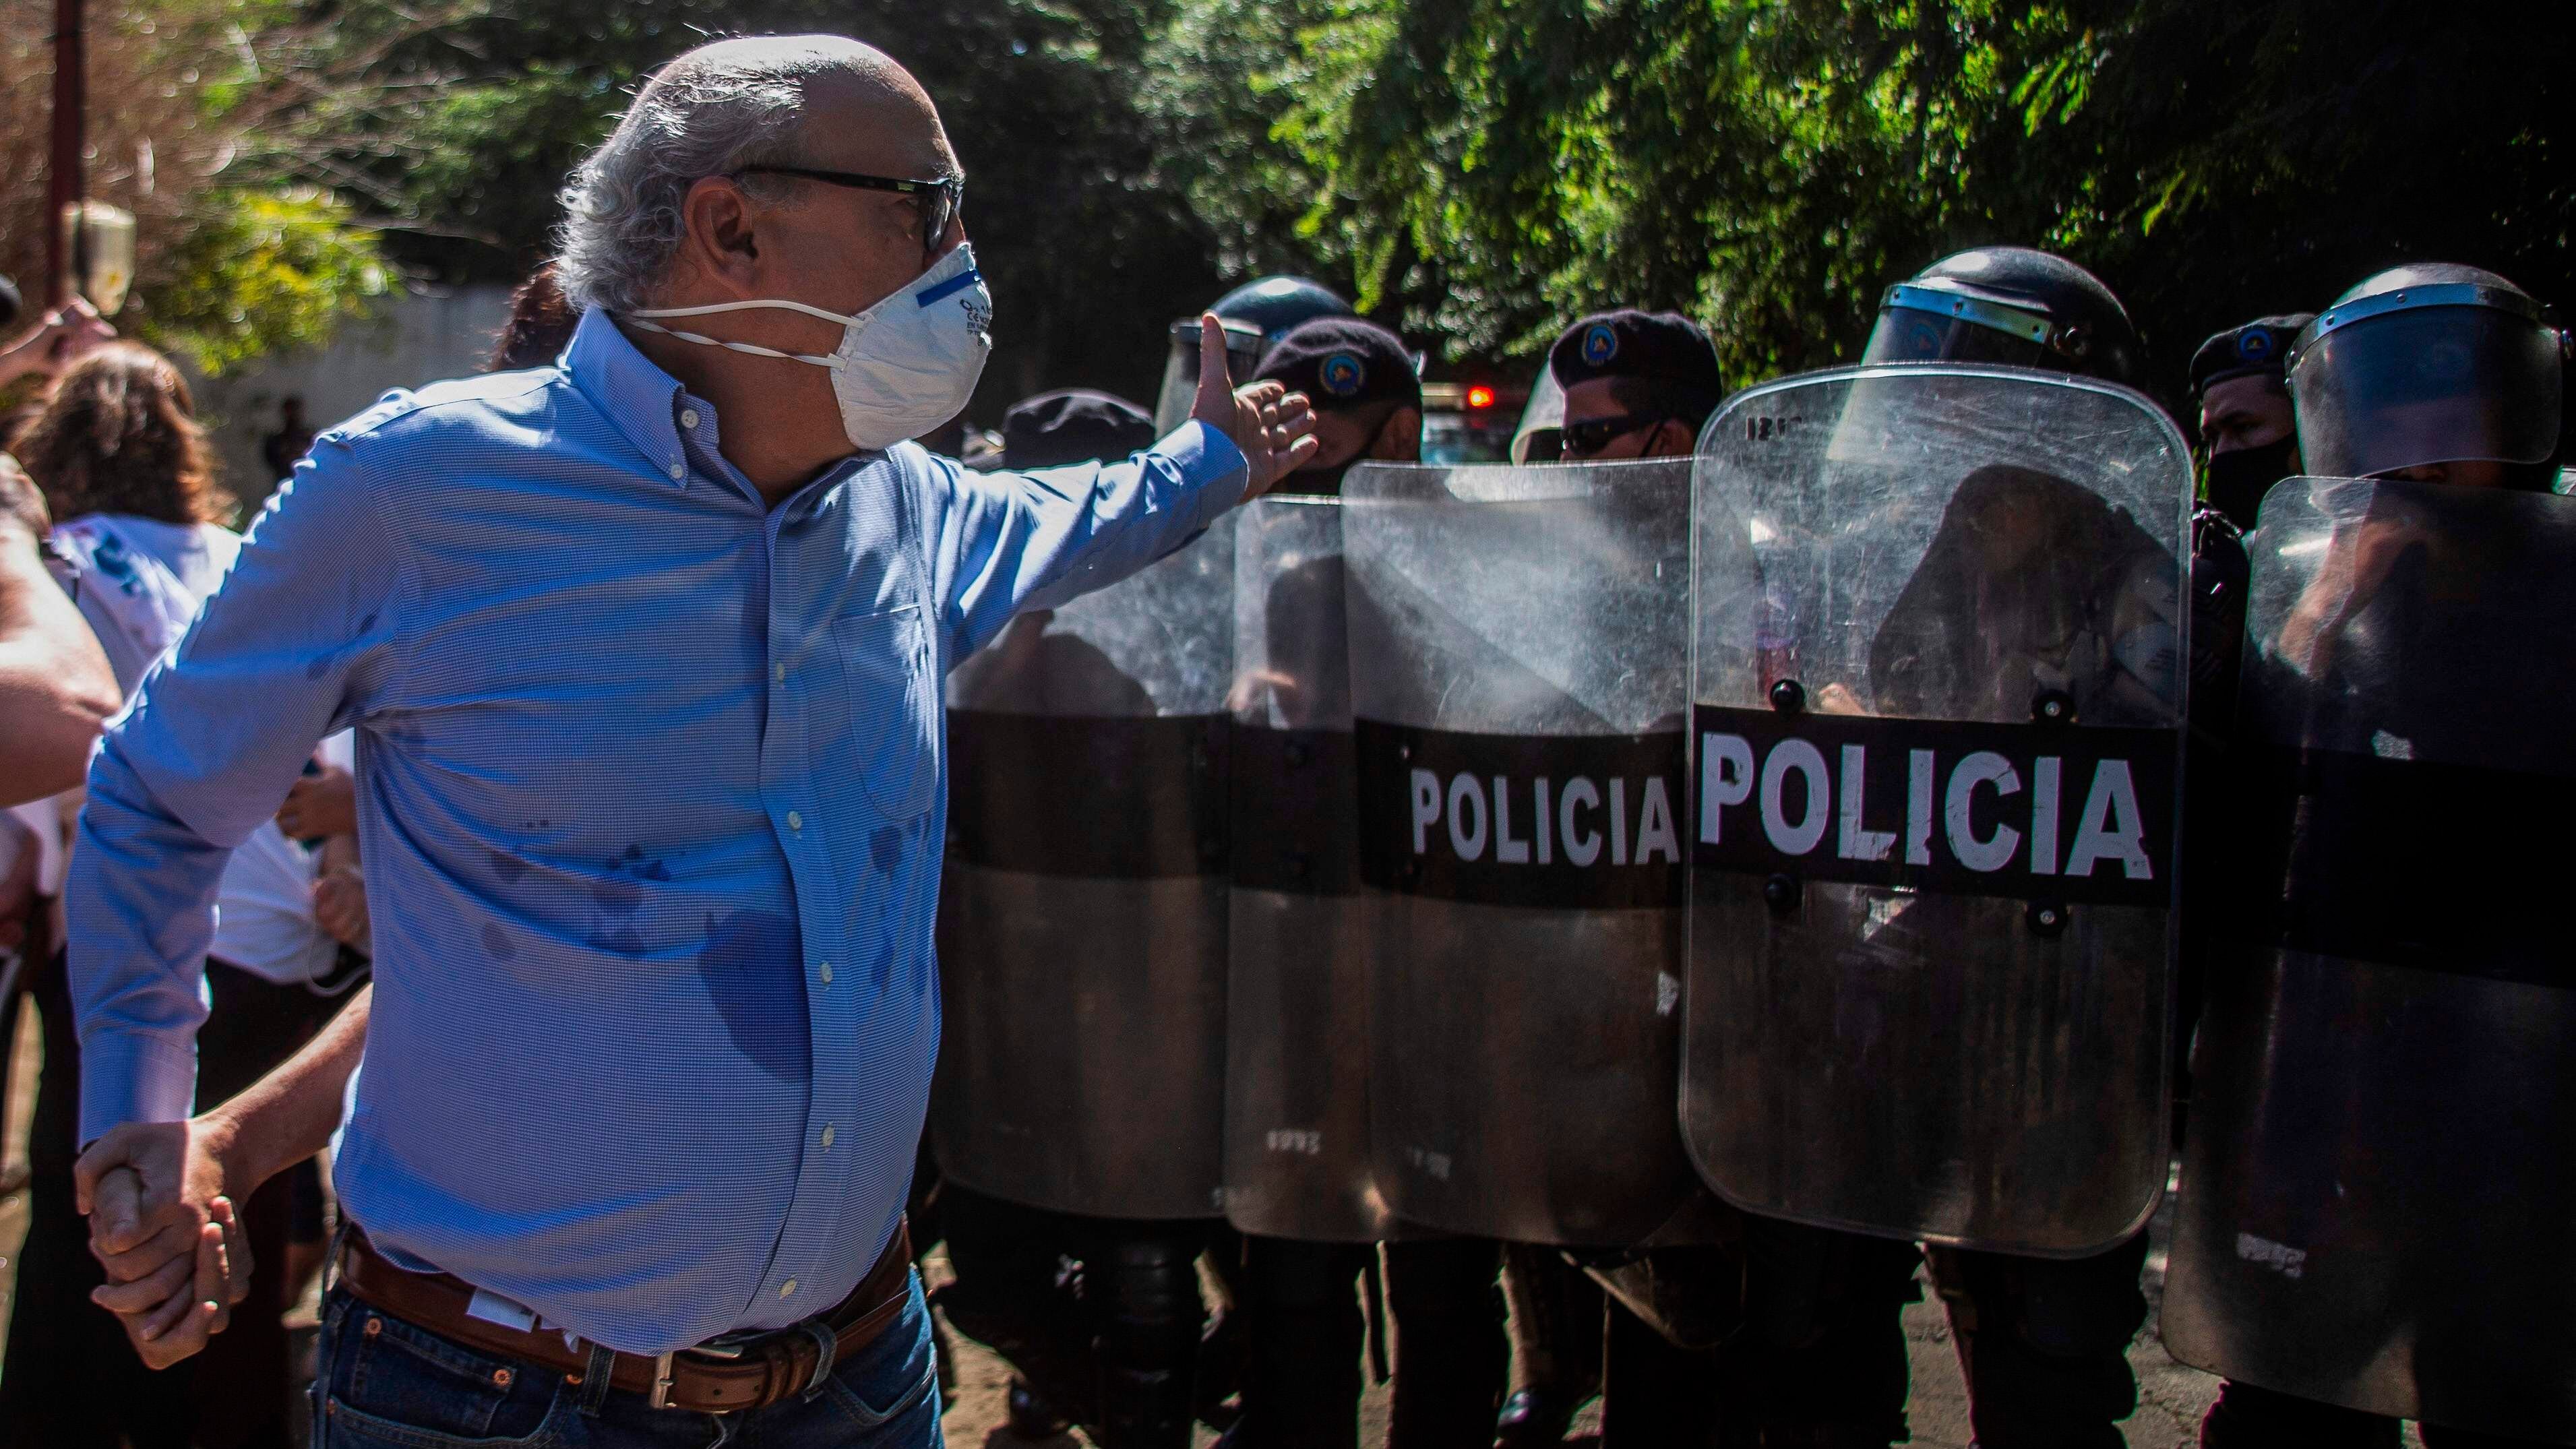 El periodista Carlos Fernando Chamorro en diciembre de 2020 frente a oficiales antidisturbios que custodian las instalaciones de la revista Confidencial, confiscadas por el régimen de Daniel Ortega.